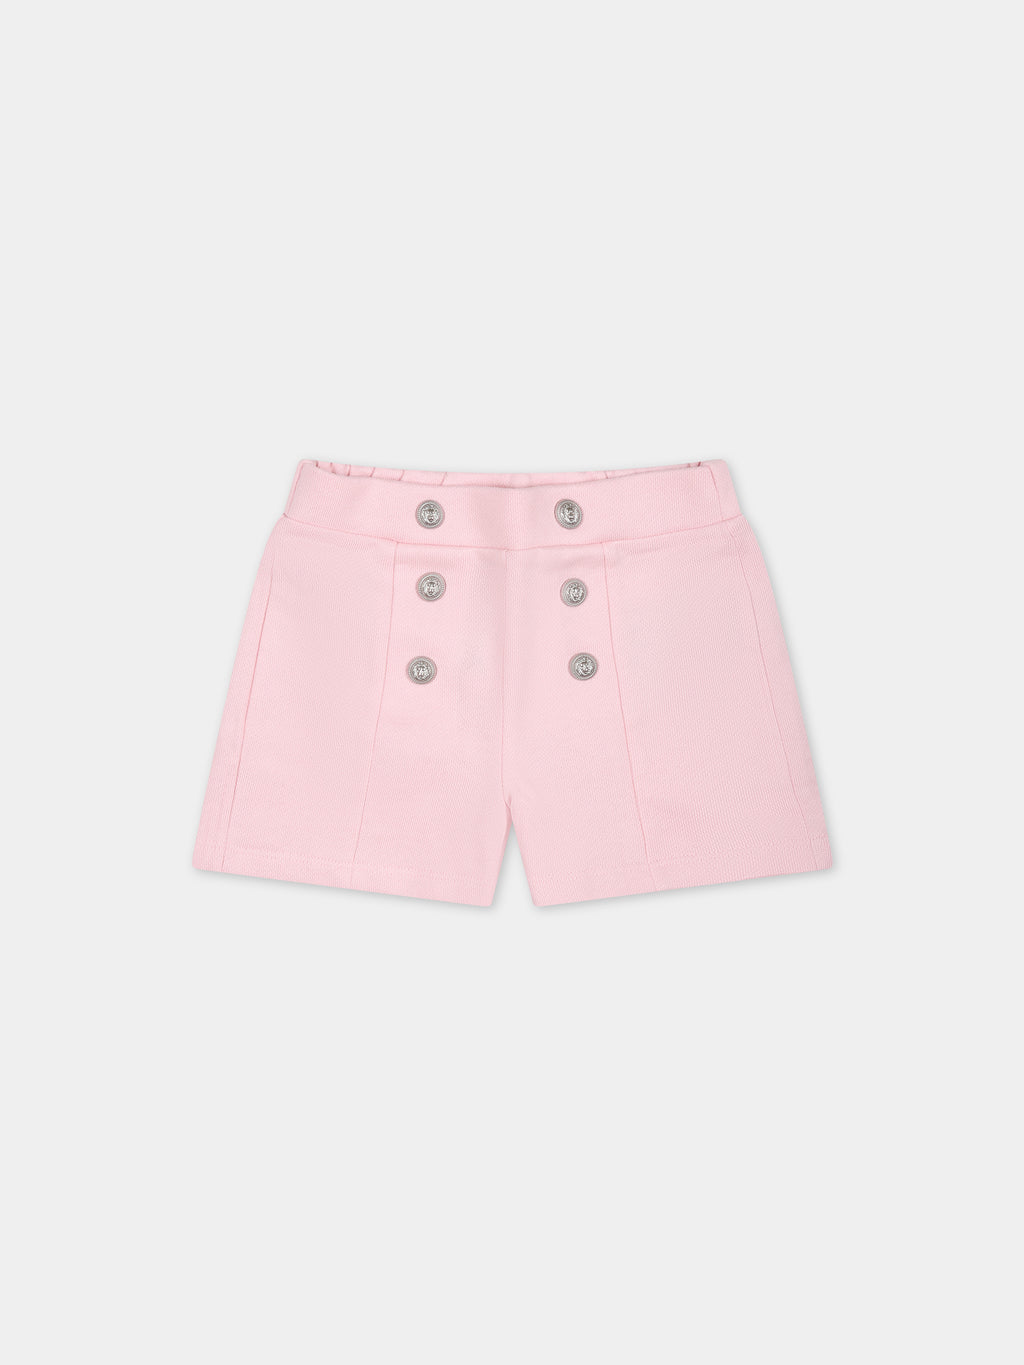 Shorts rosa per neonata con bottoni argento